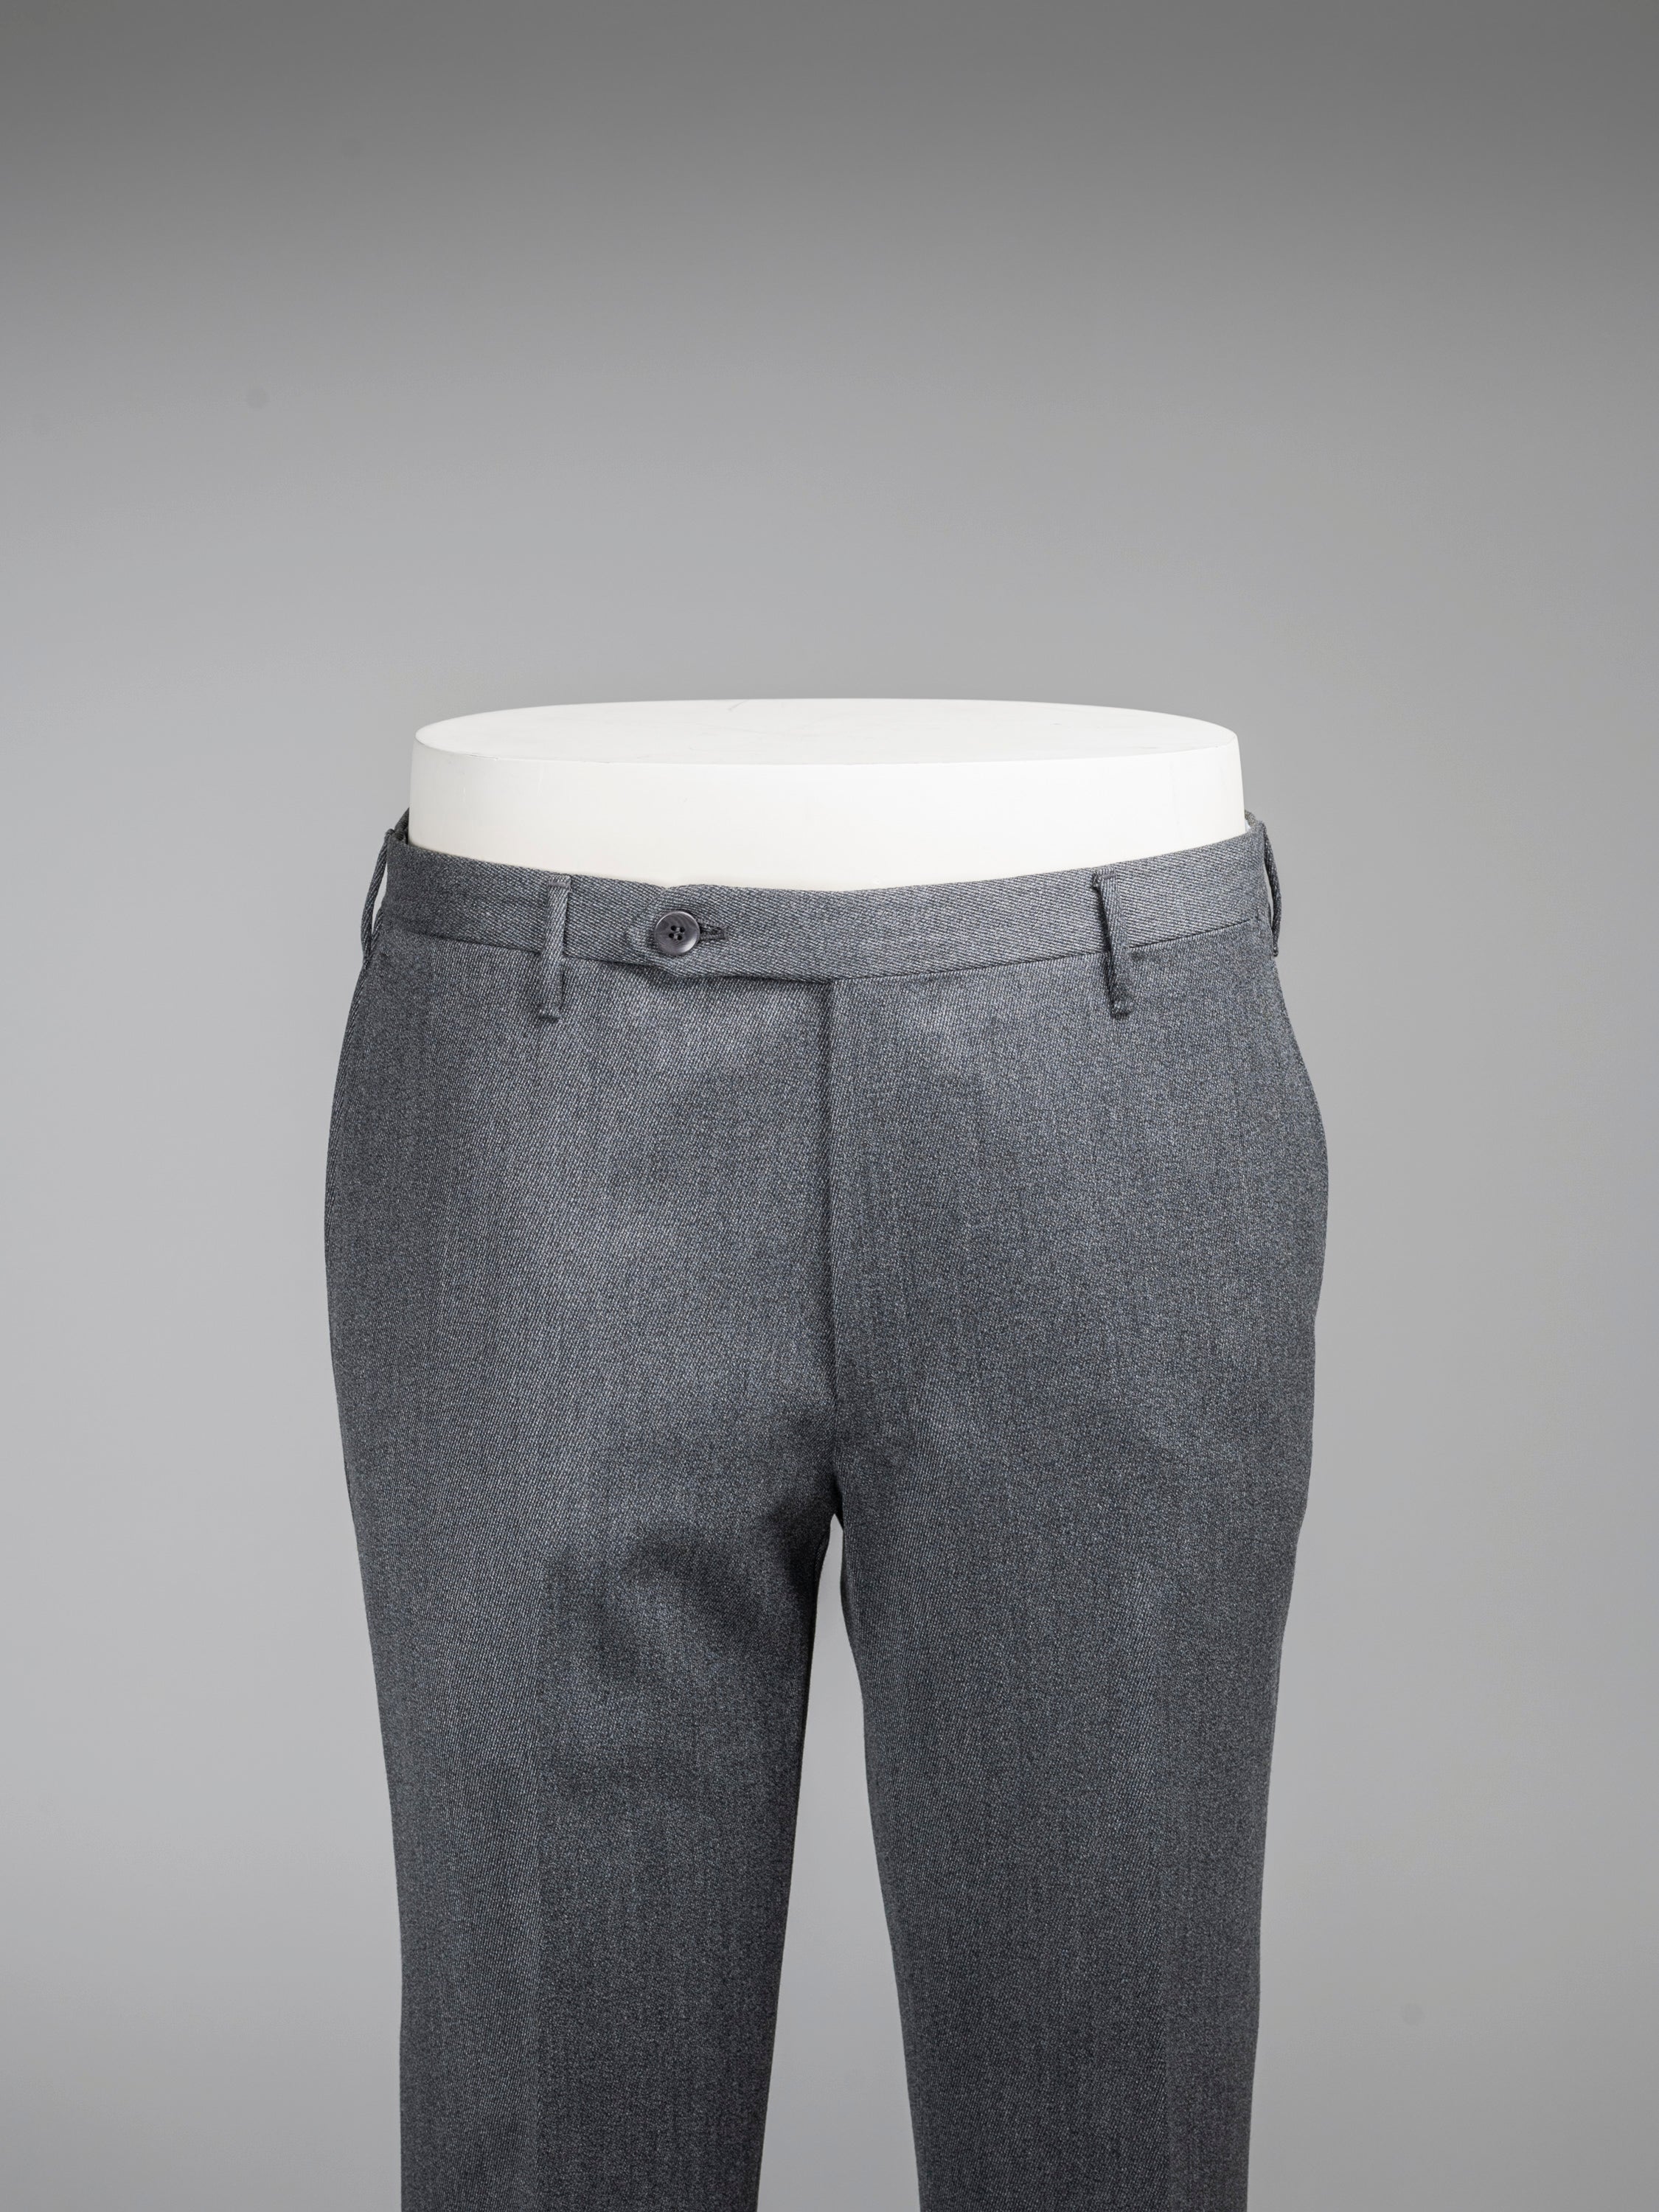 Vintage Suit Pants Men's Medium Waist 33 Dark Grey Suit Trousers Men M  Dockers Pants Straight Leg Dress Pants 33 Gray Business Suit Pants - Etsy